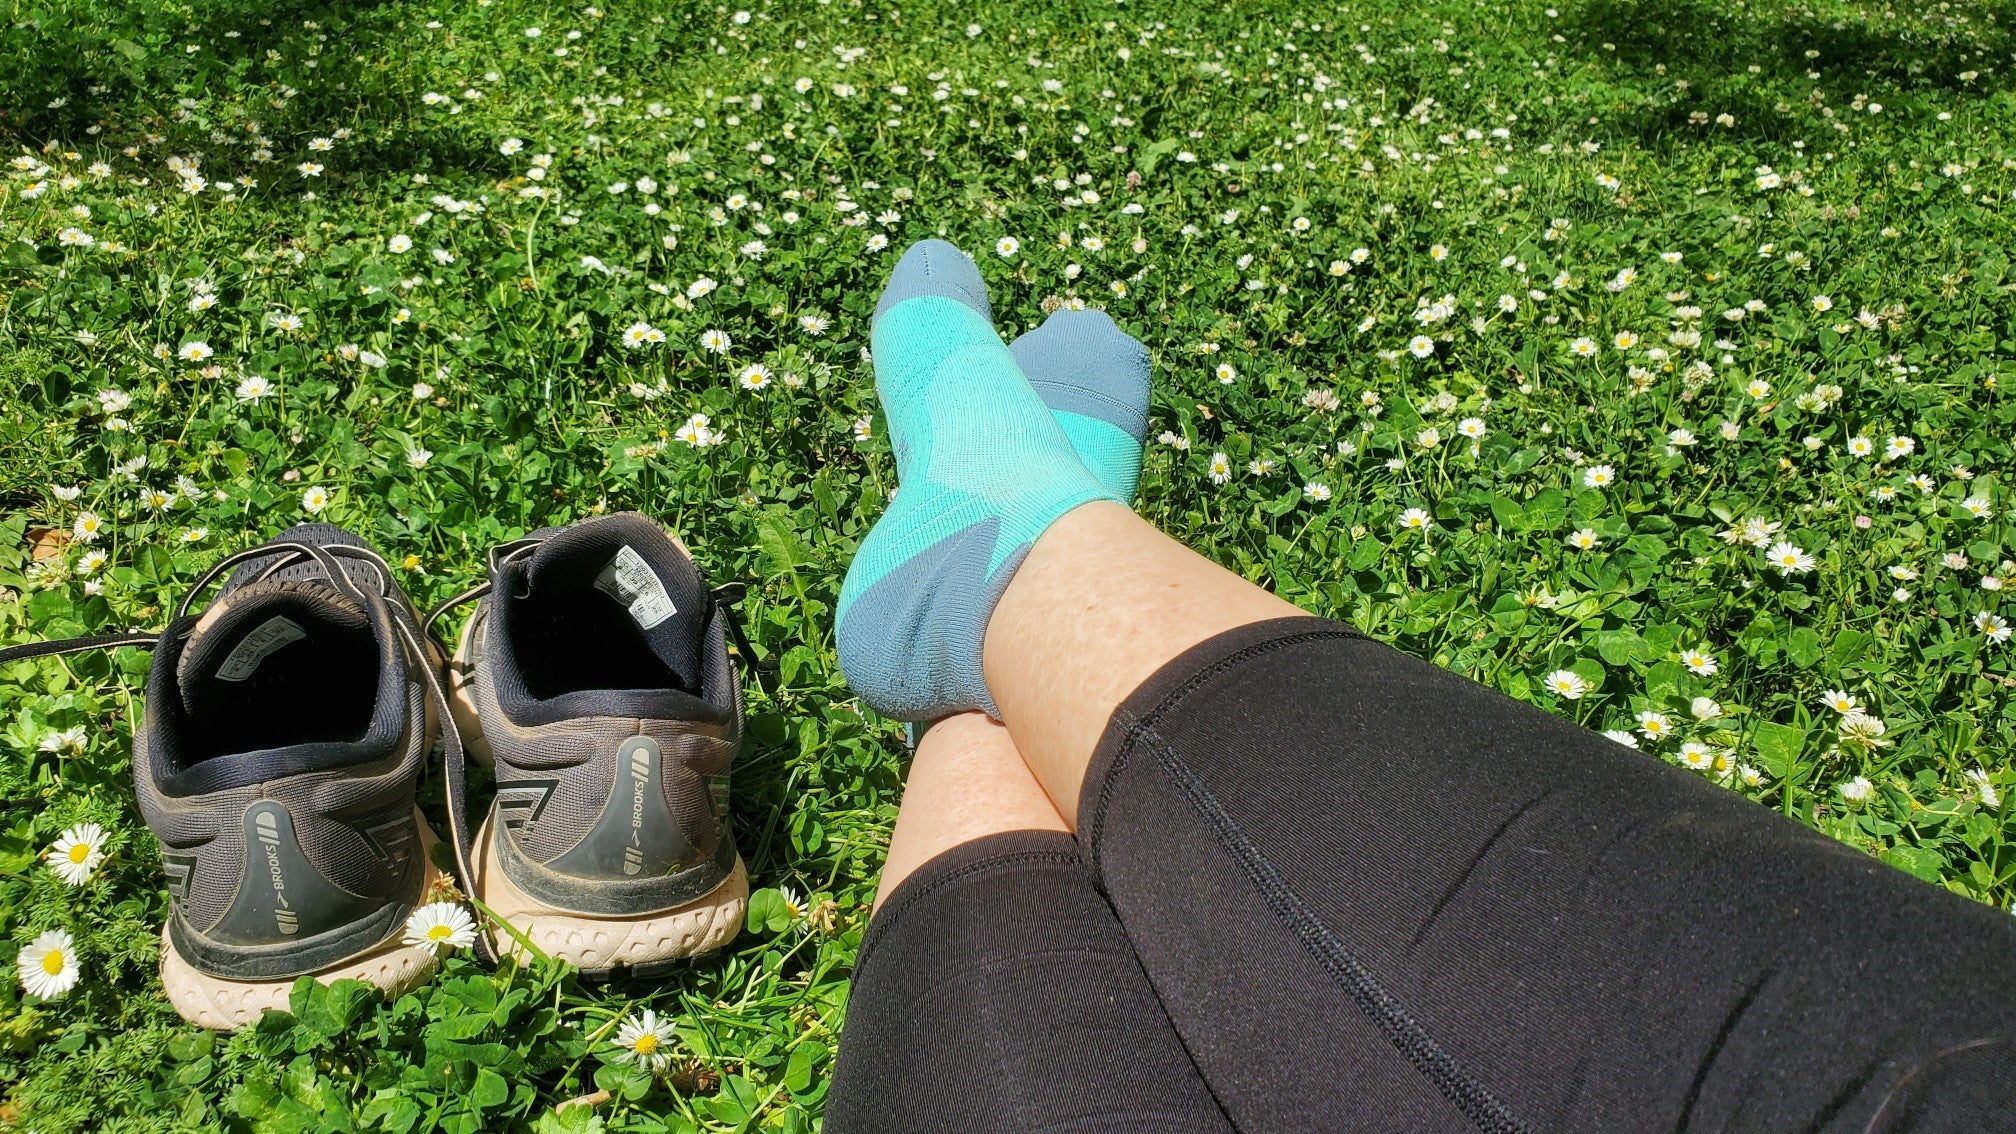 Should I wear compression socks for hiking?